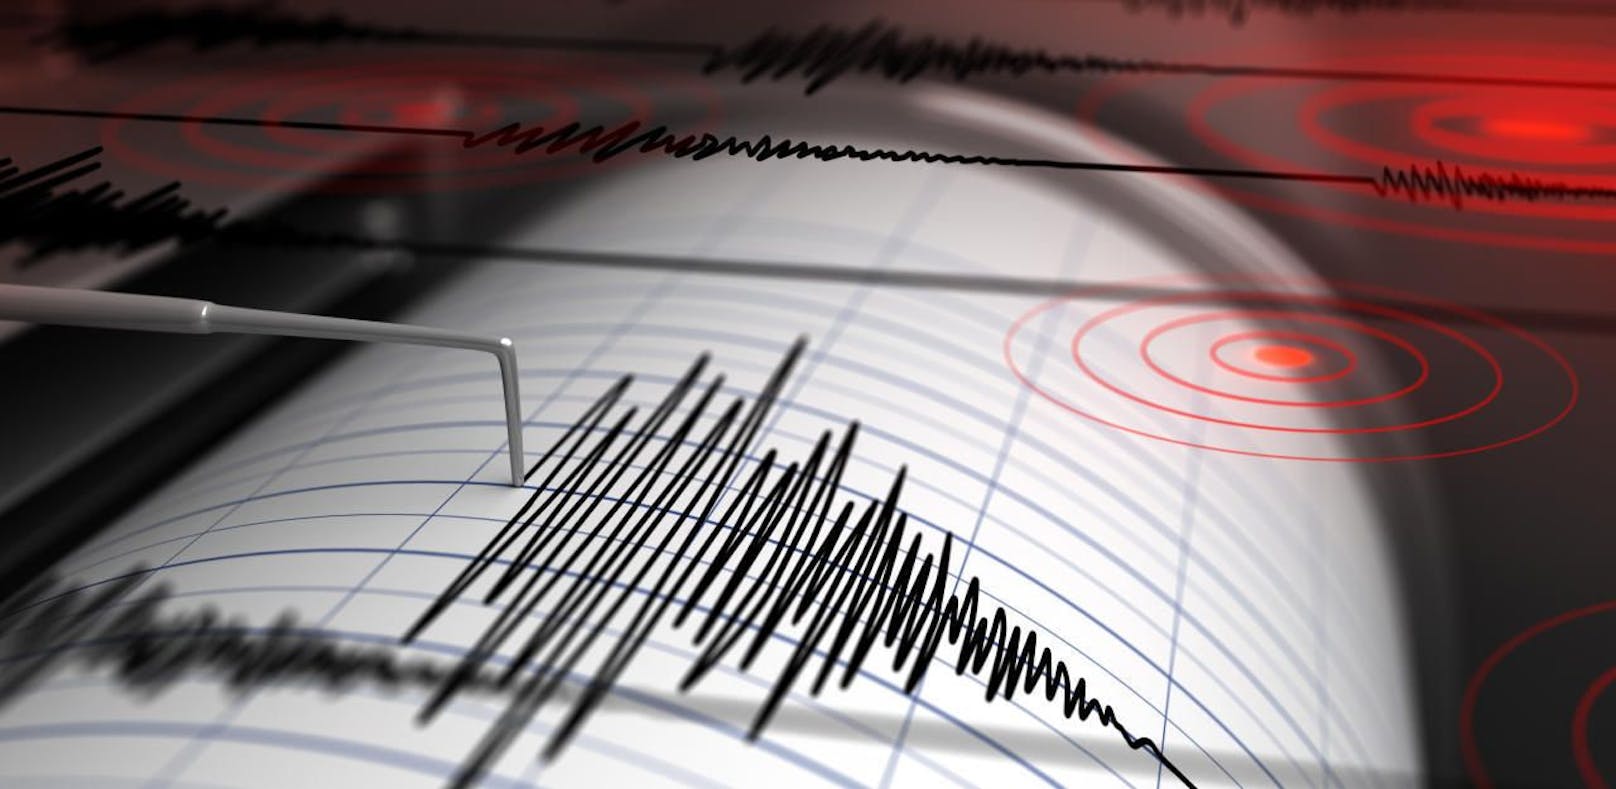 Zwei leichte Erdbeben wurden bei Wiener Neustadt registriert.